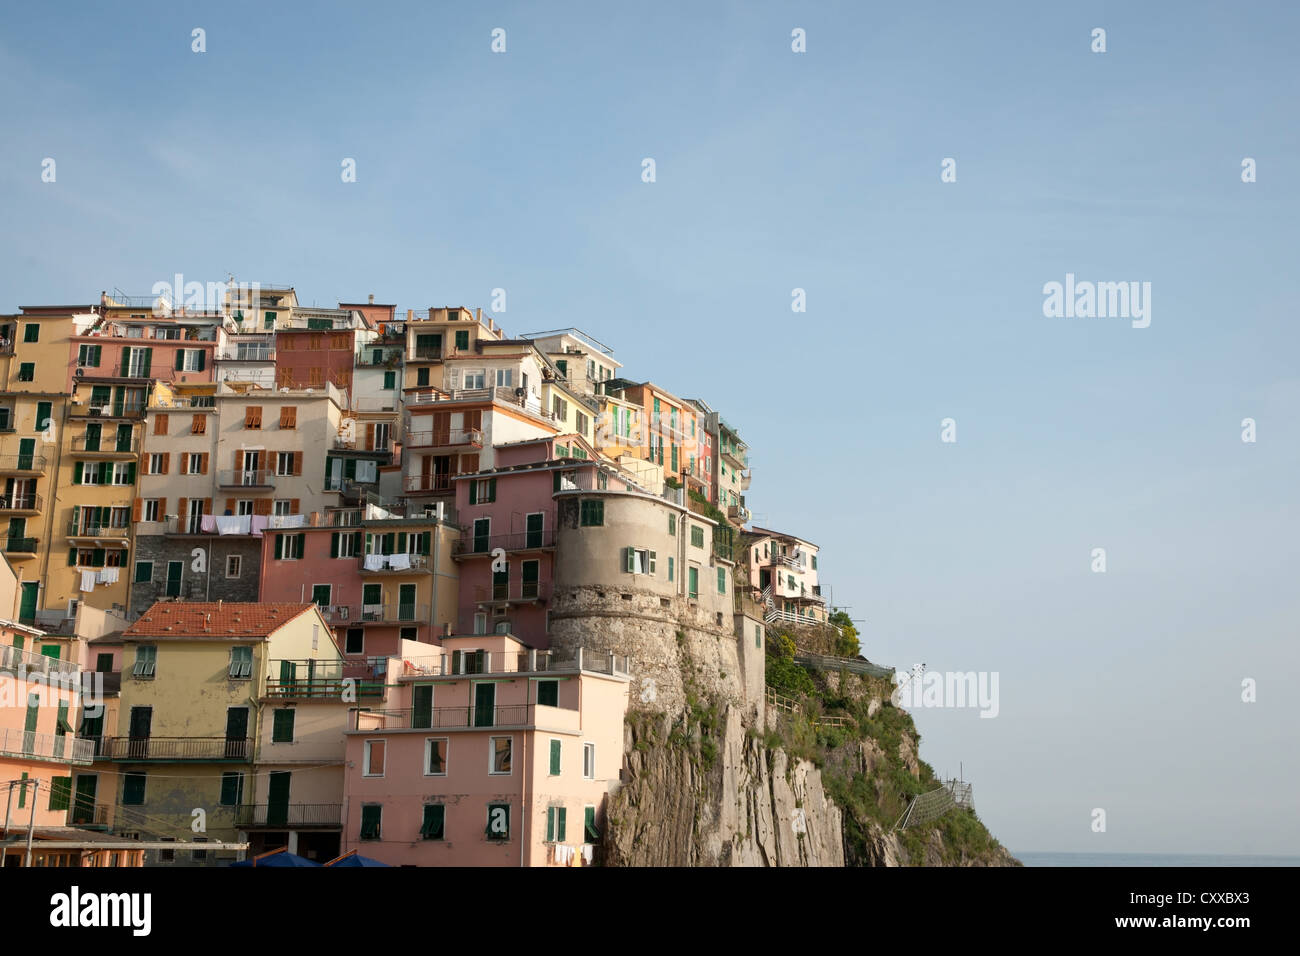 Riomaggiore, Italian coastal town built on cliff-tops of the Cinque Terre area. Stock Photo